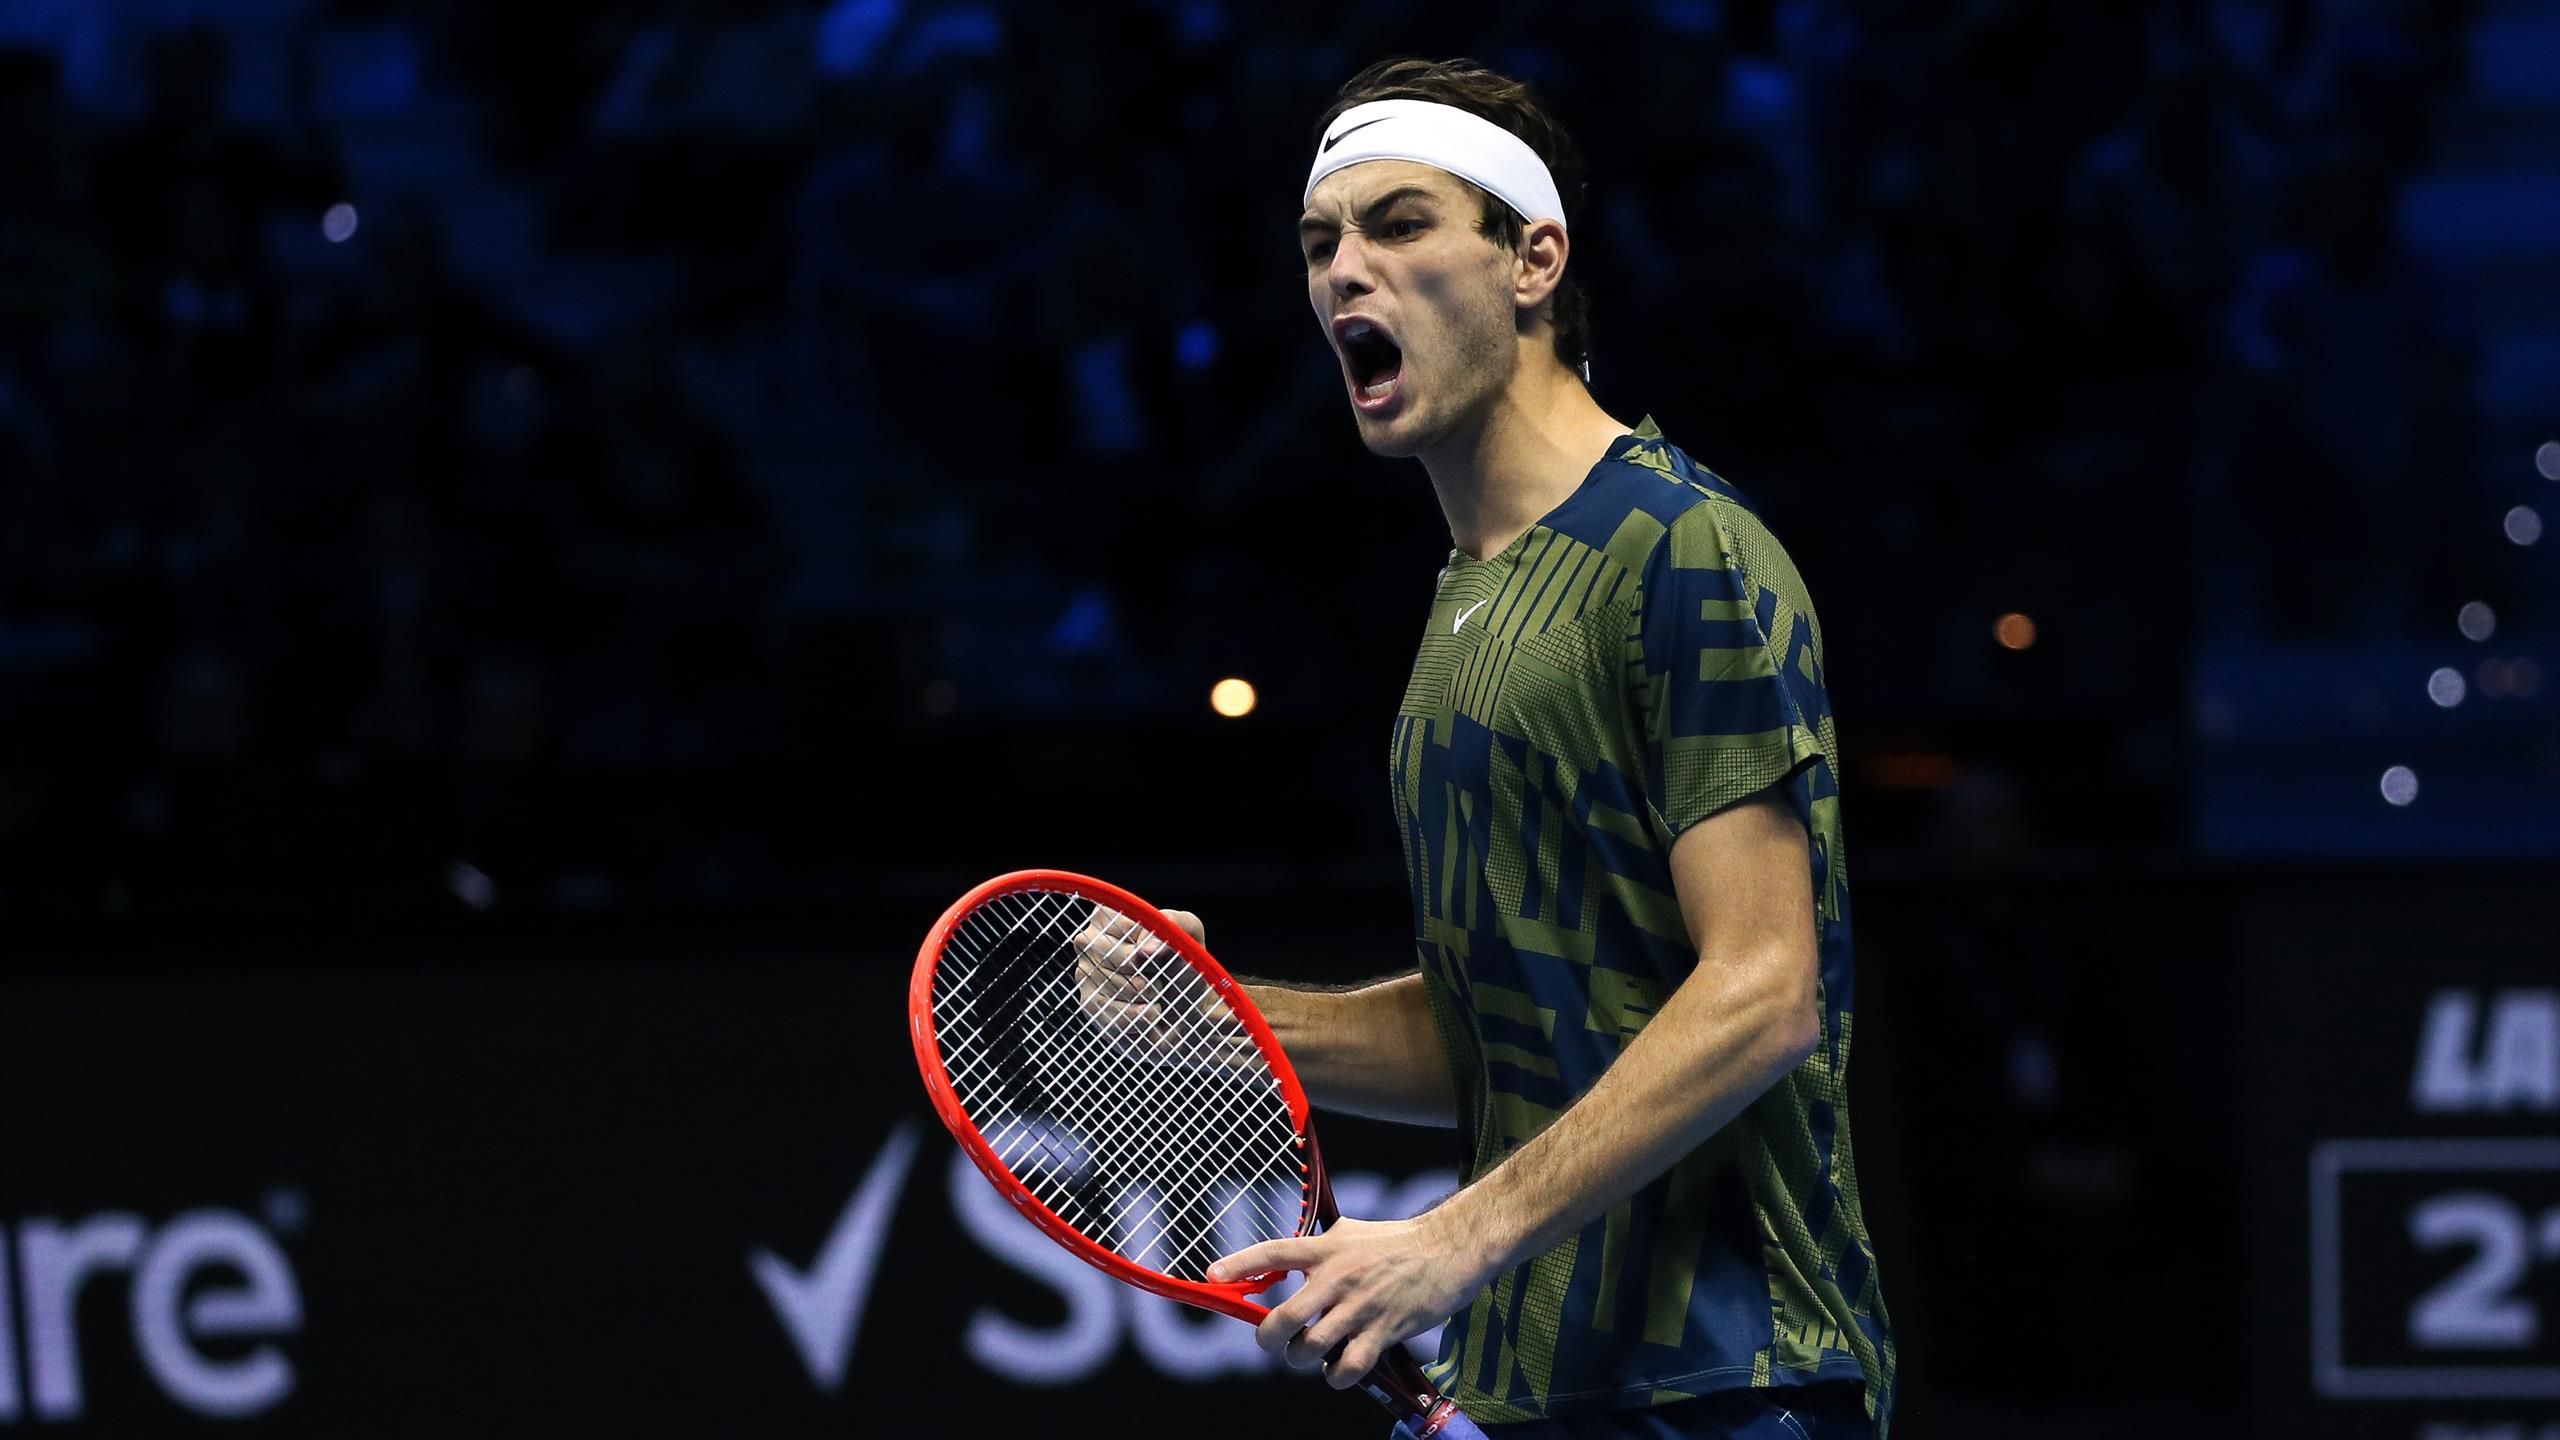 ATP Finals - Highlights Rafael Nadal kassiert bittere Pleite gegen Taylor Fritz zum Auftakt - Tennis Video